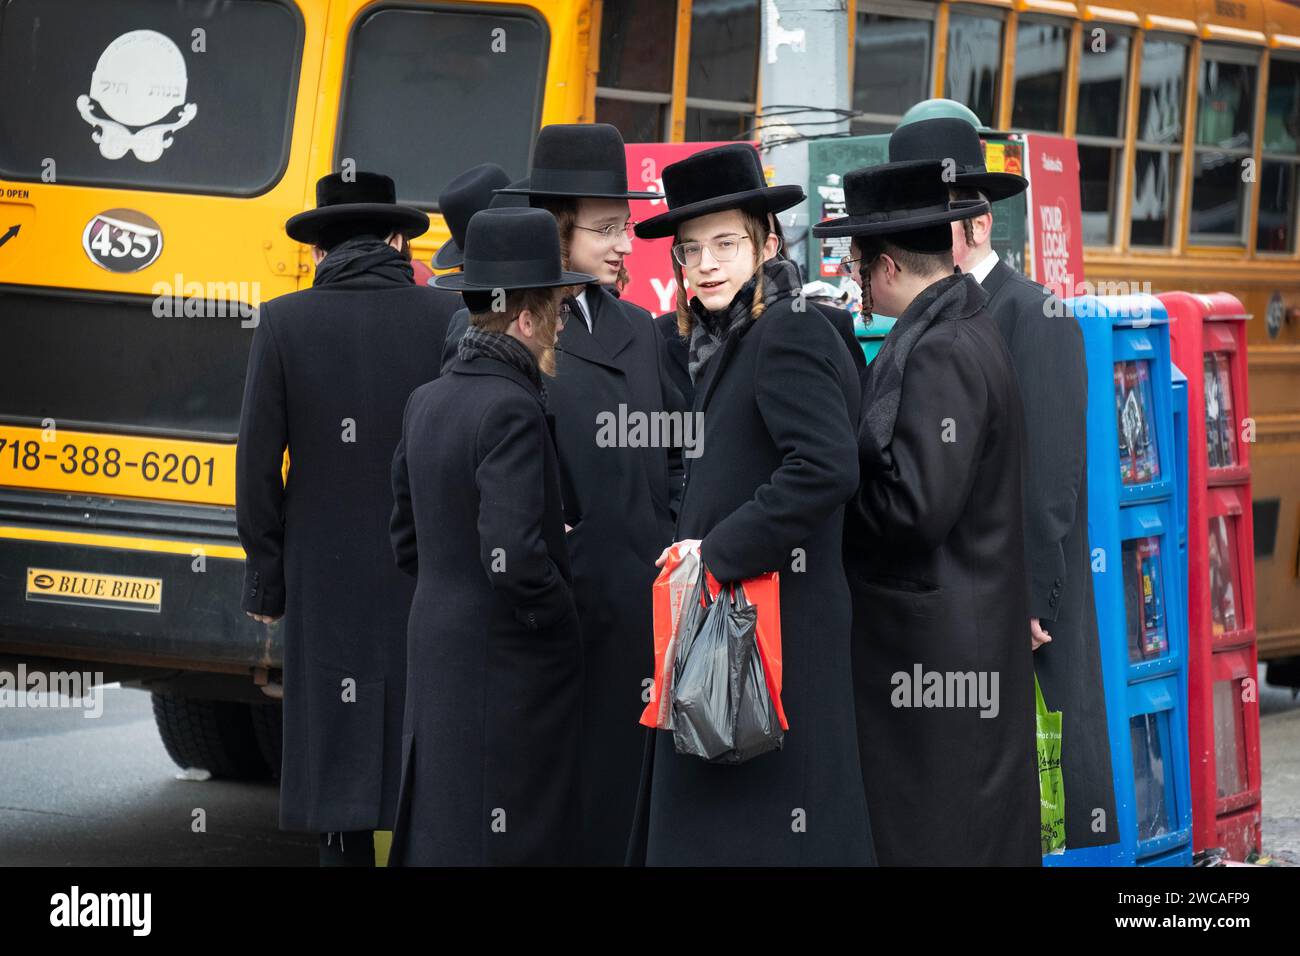 Un grupo de estudiantes judíos ortodoxos esperan un autobús para transportarlos a otra parte de Brooklyn para estudiar Talmud. En Bedford Ave en Brooklyn. Foto de stock